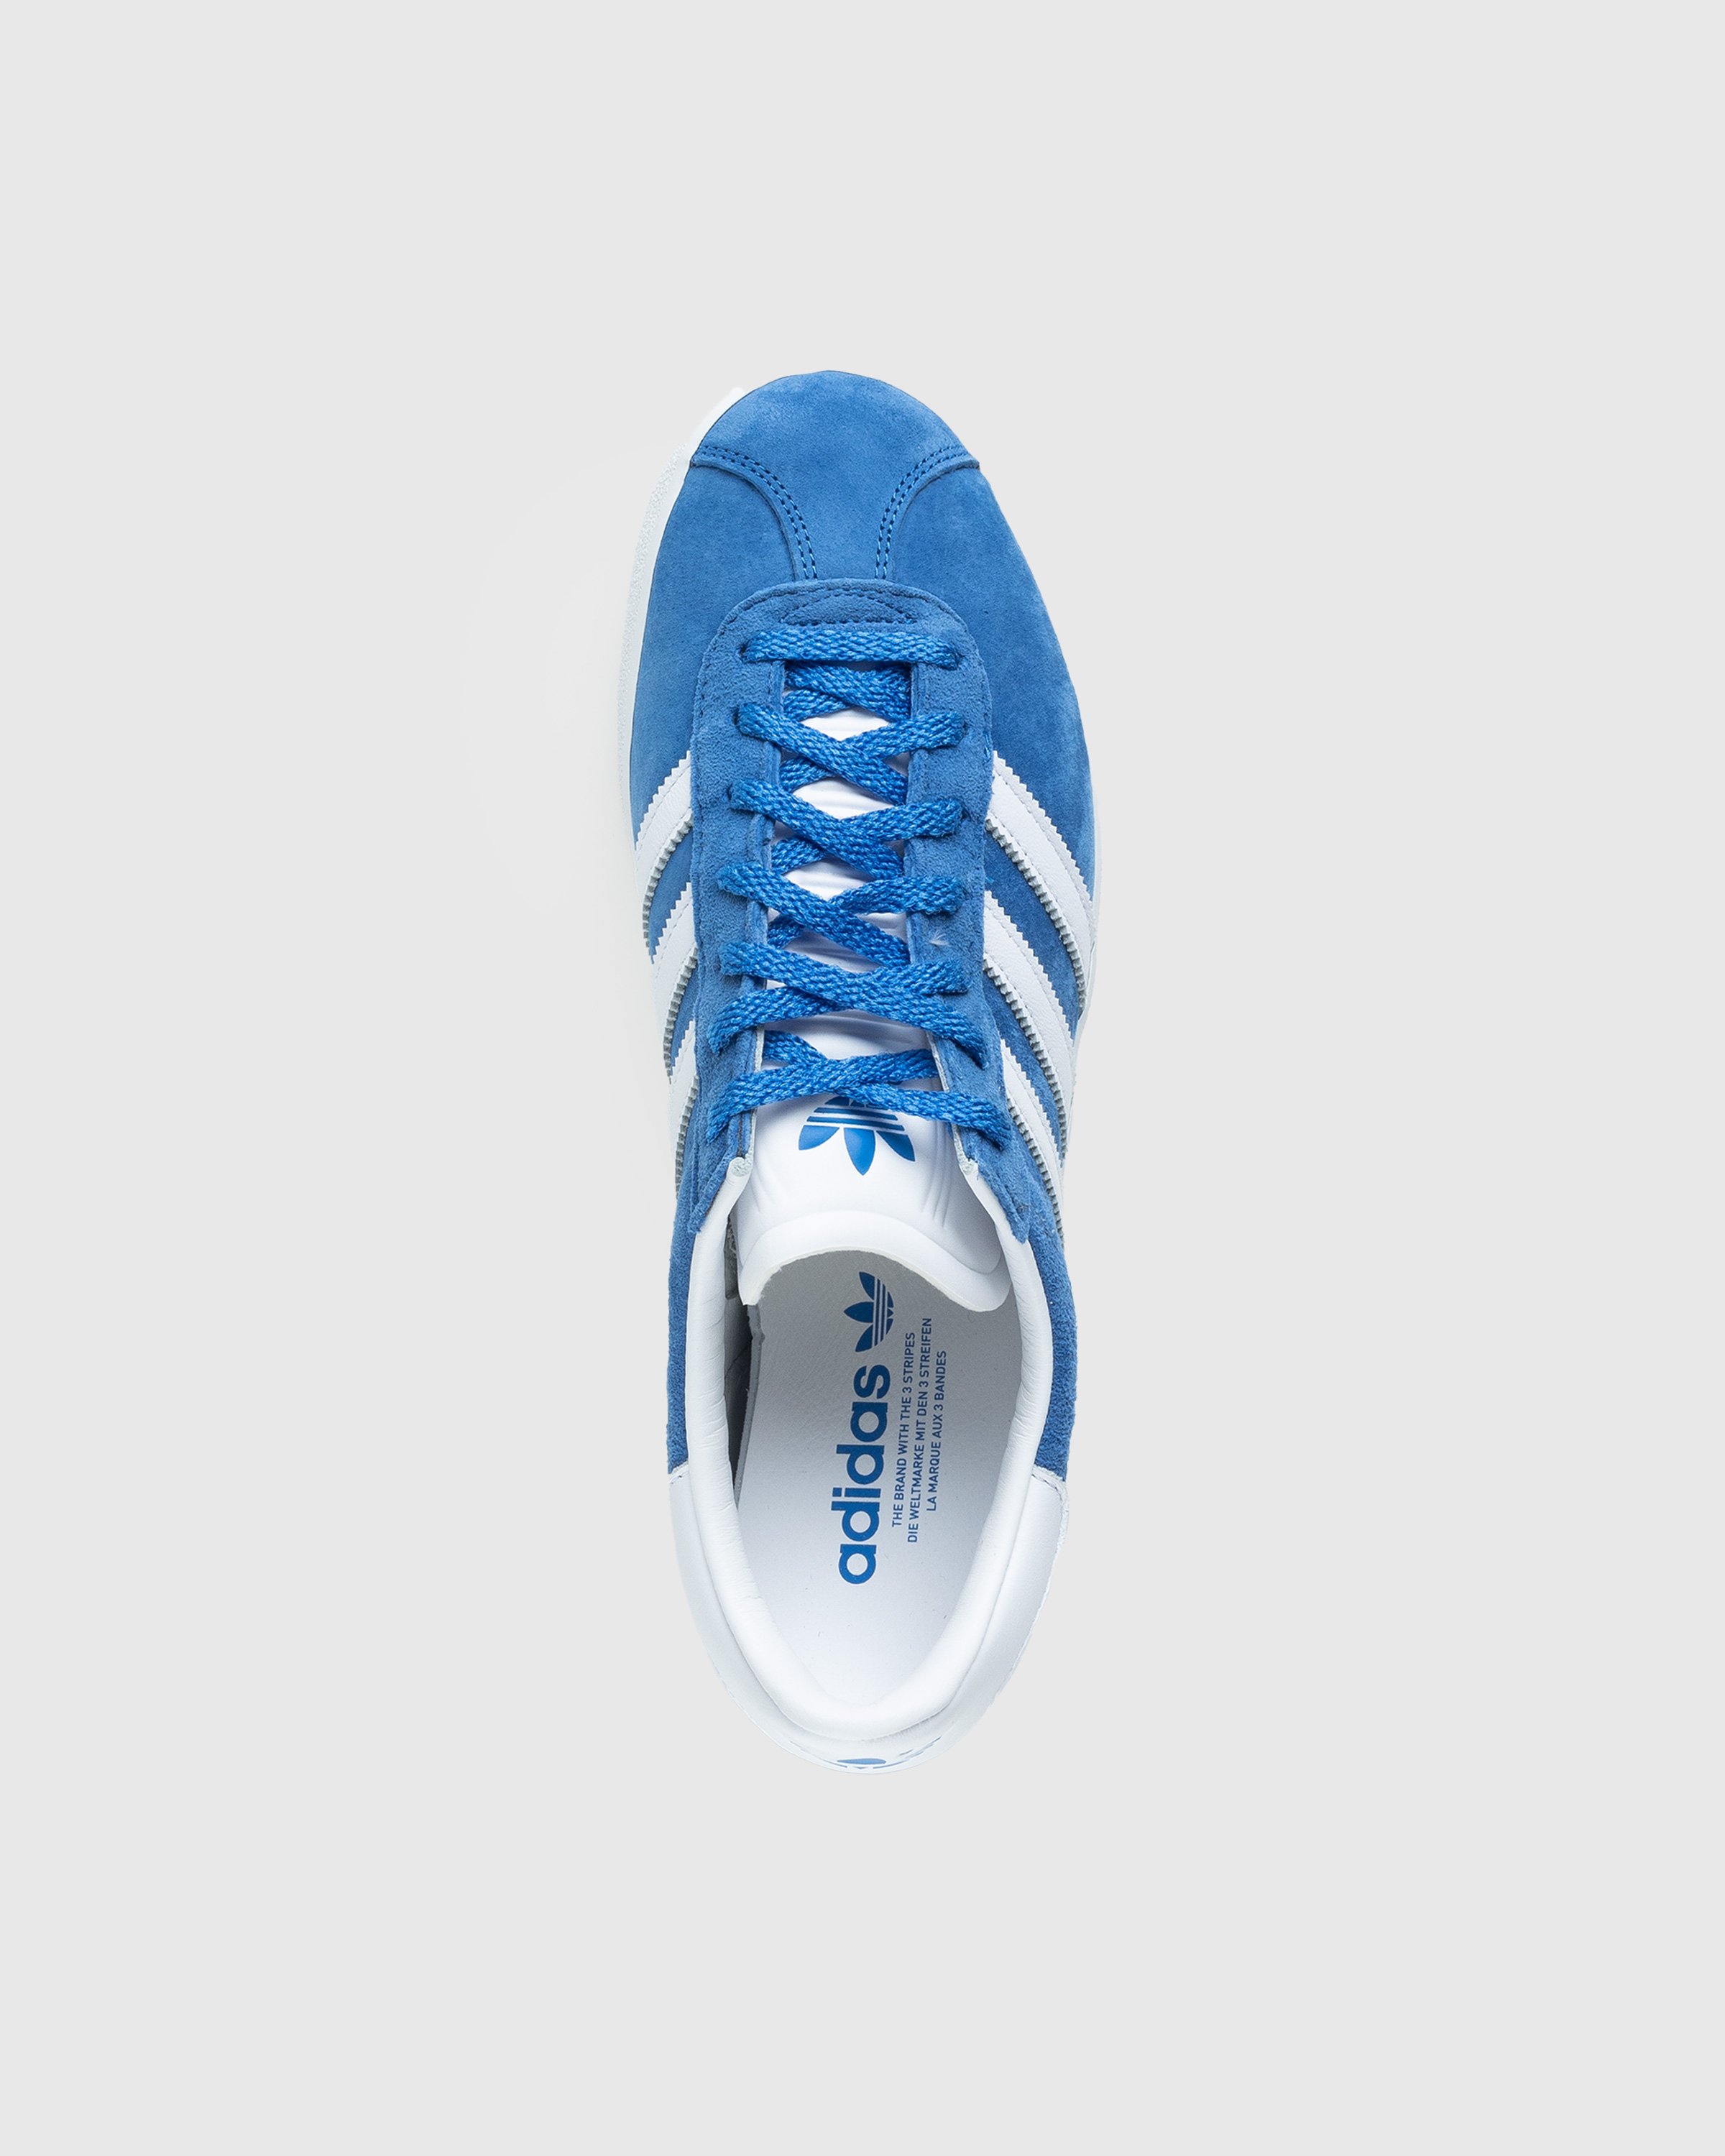 Adidas - Gazelle 85 Blue - Footwear - Blue - Image 5